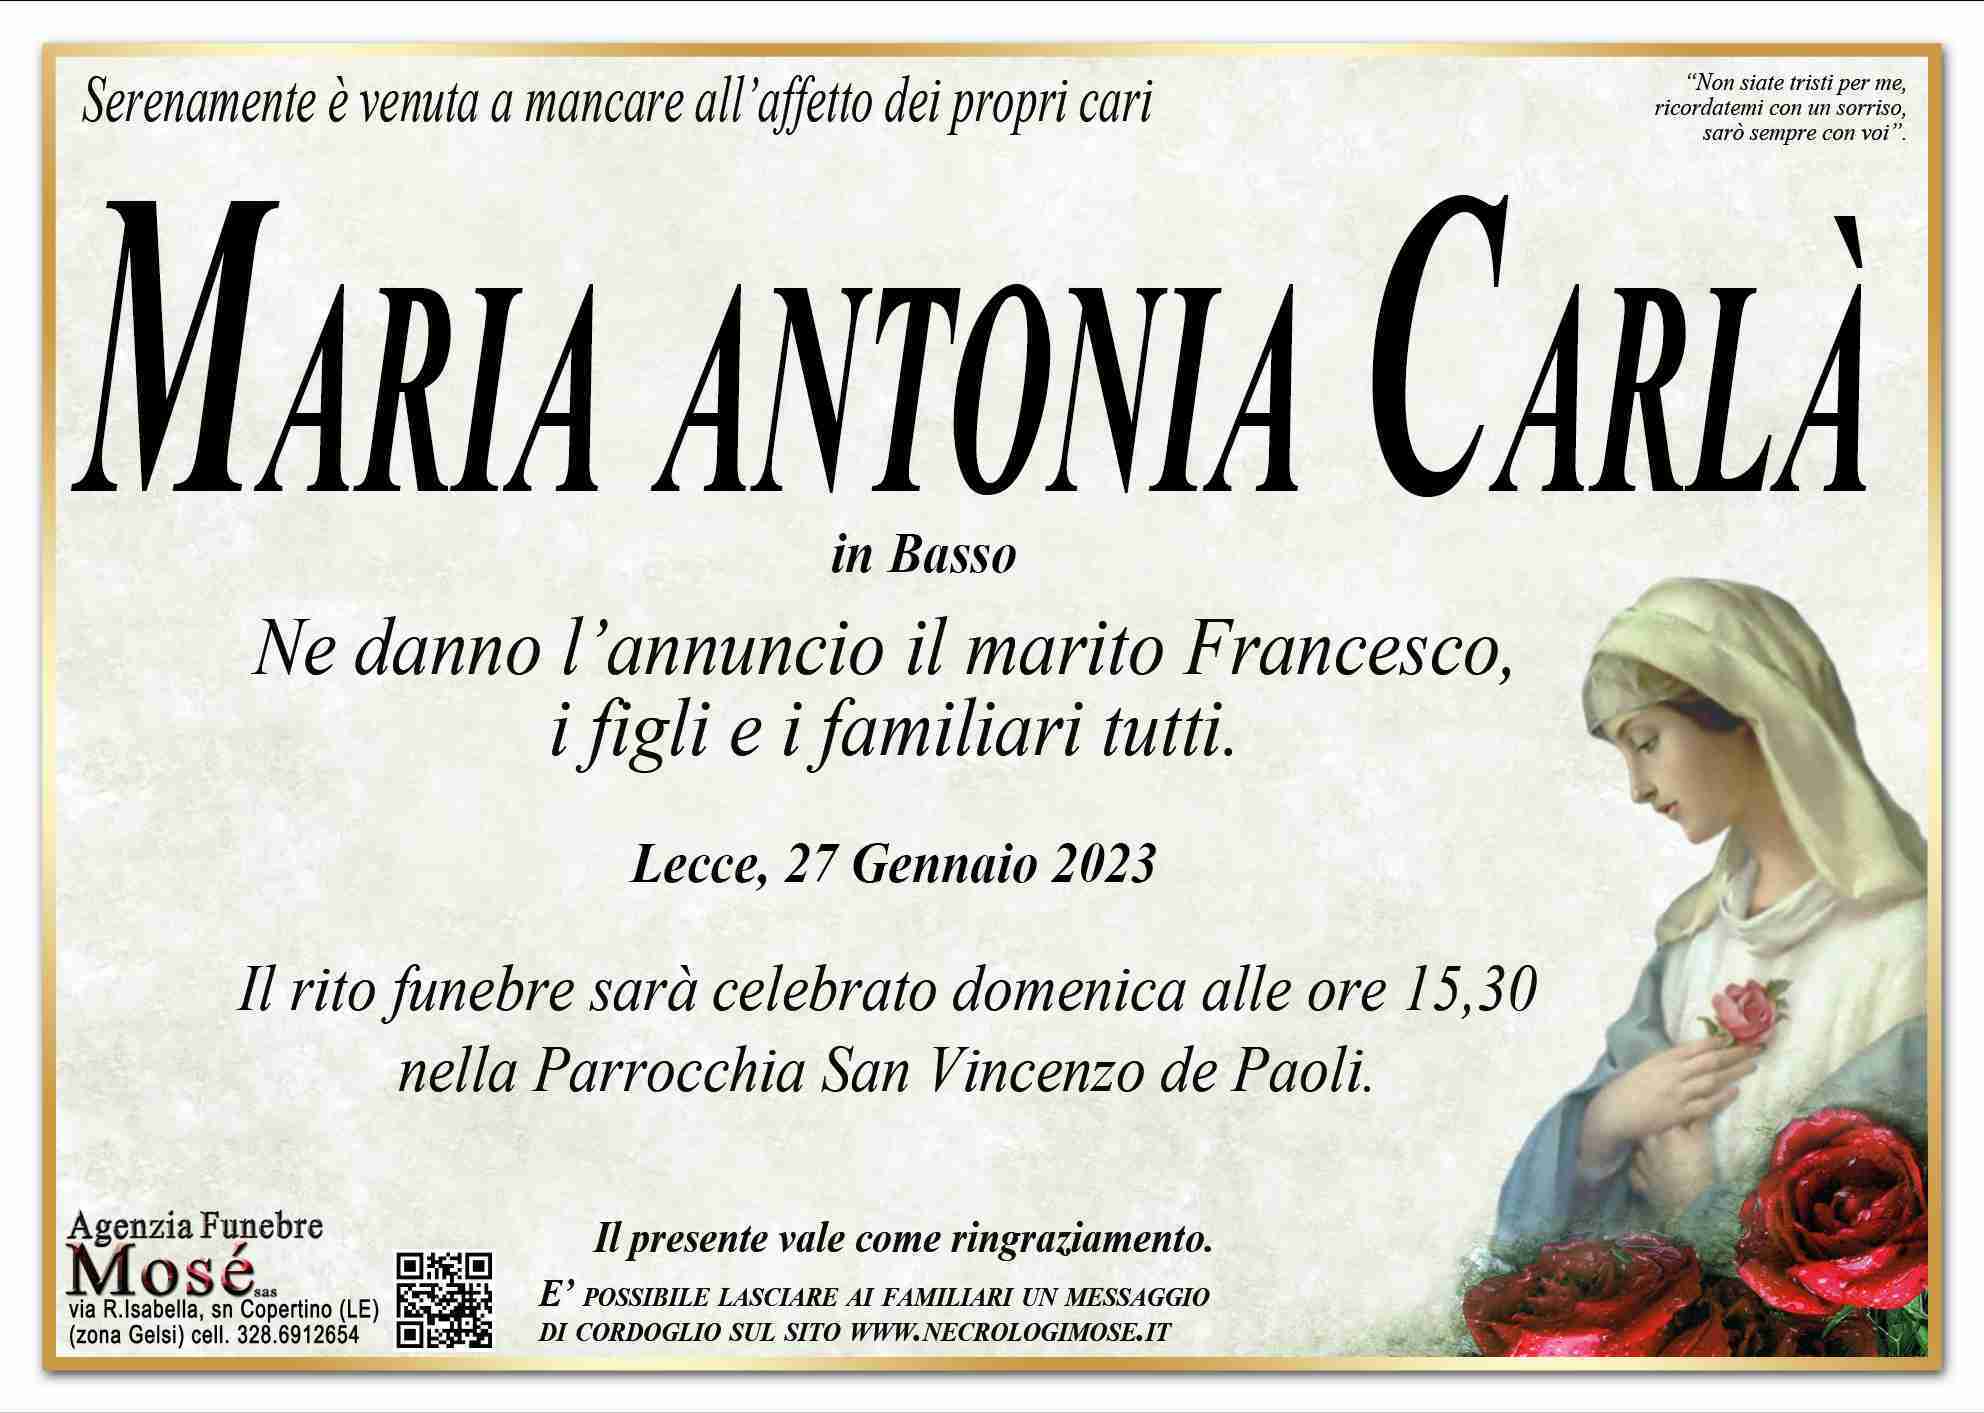 Maria Antonia Carlà